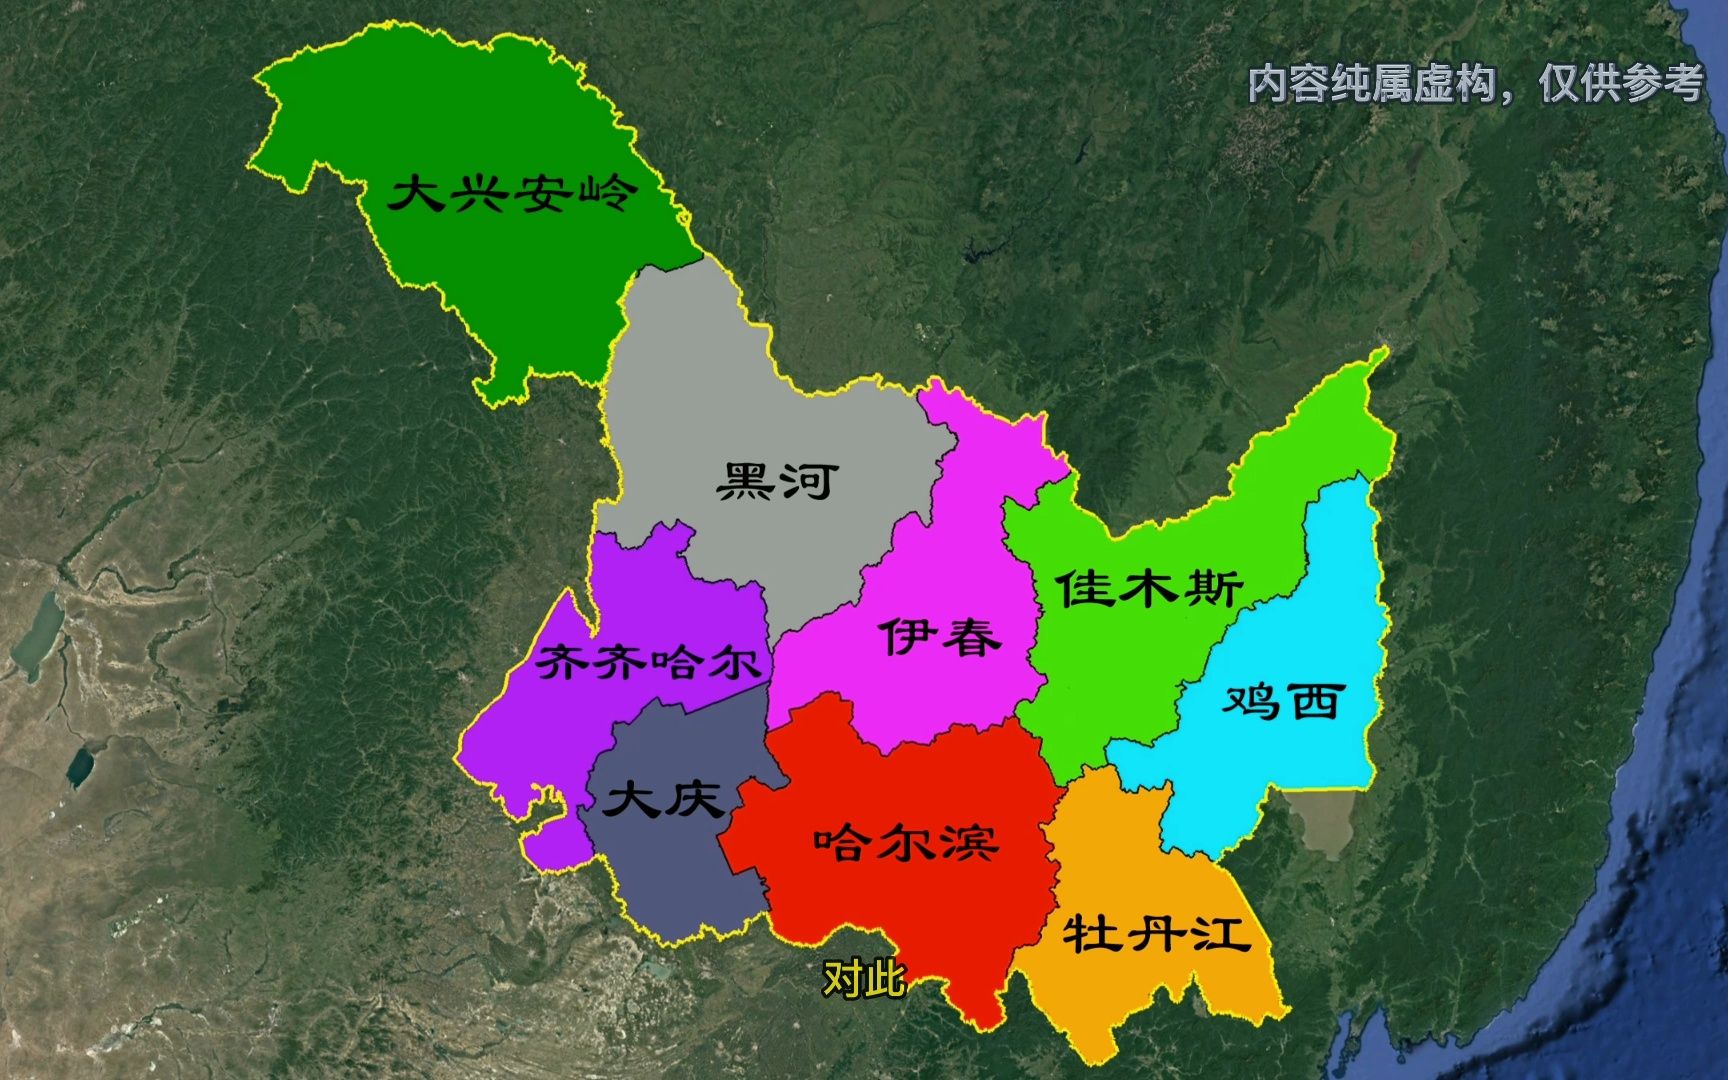 黑龙江区划调整设想,13个地市区调整到9个地市